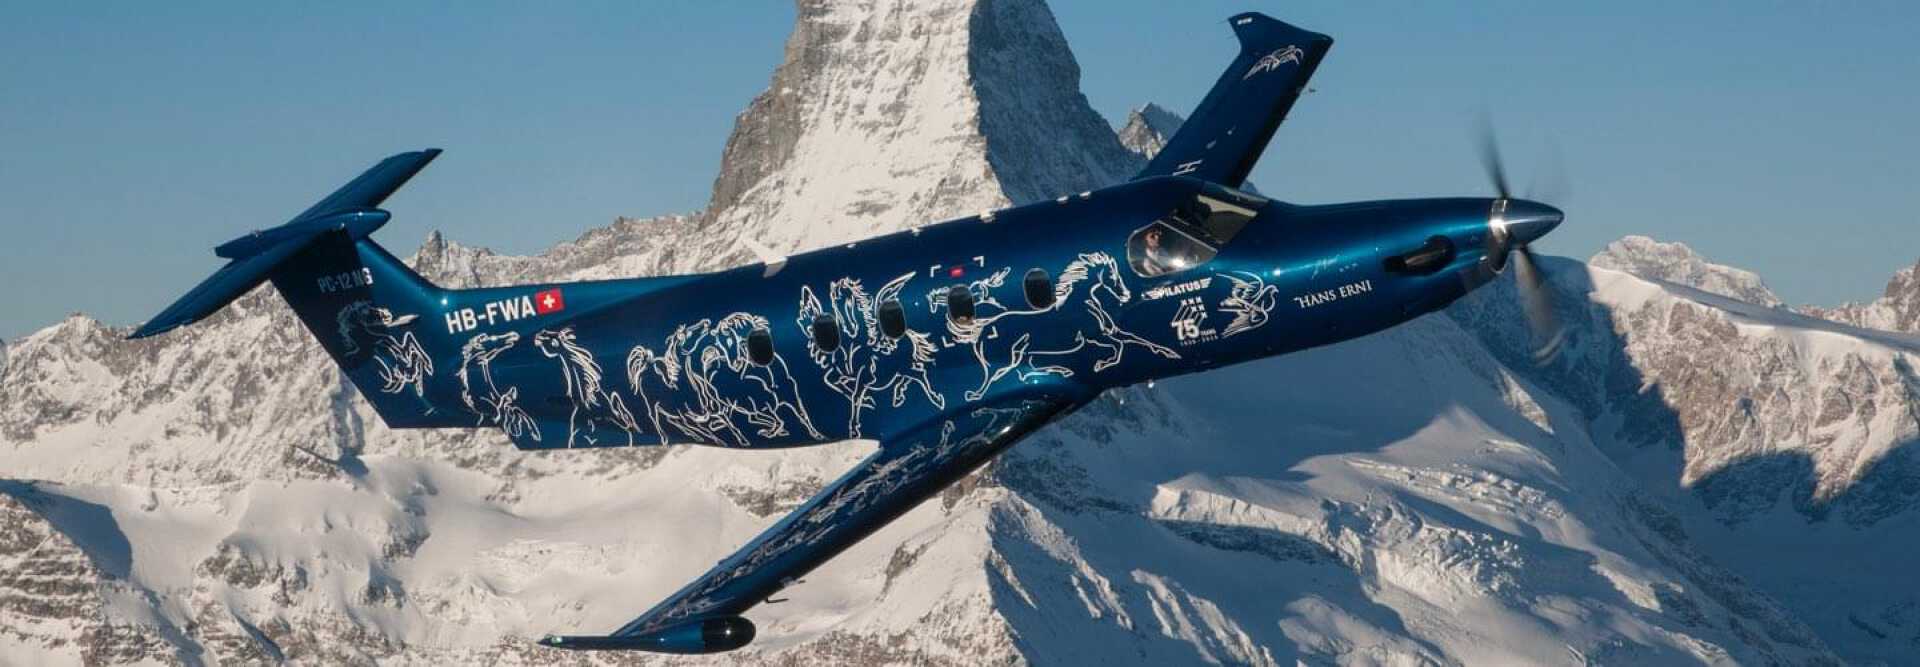 Синий турбовинтовой самолет Pilatus PC-12 с белым оперением летит над снежными горами Швейцарии